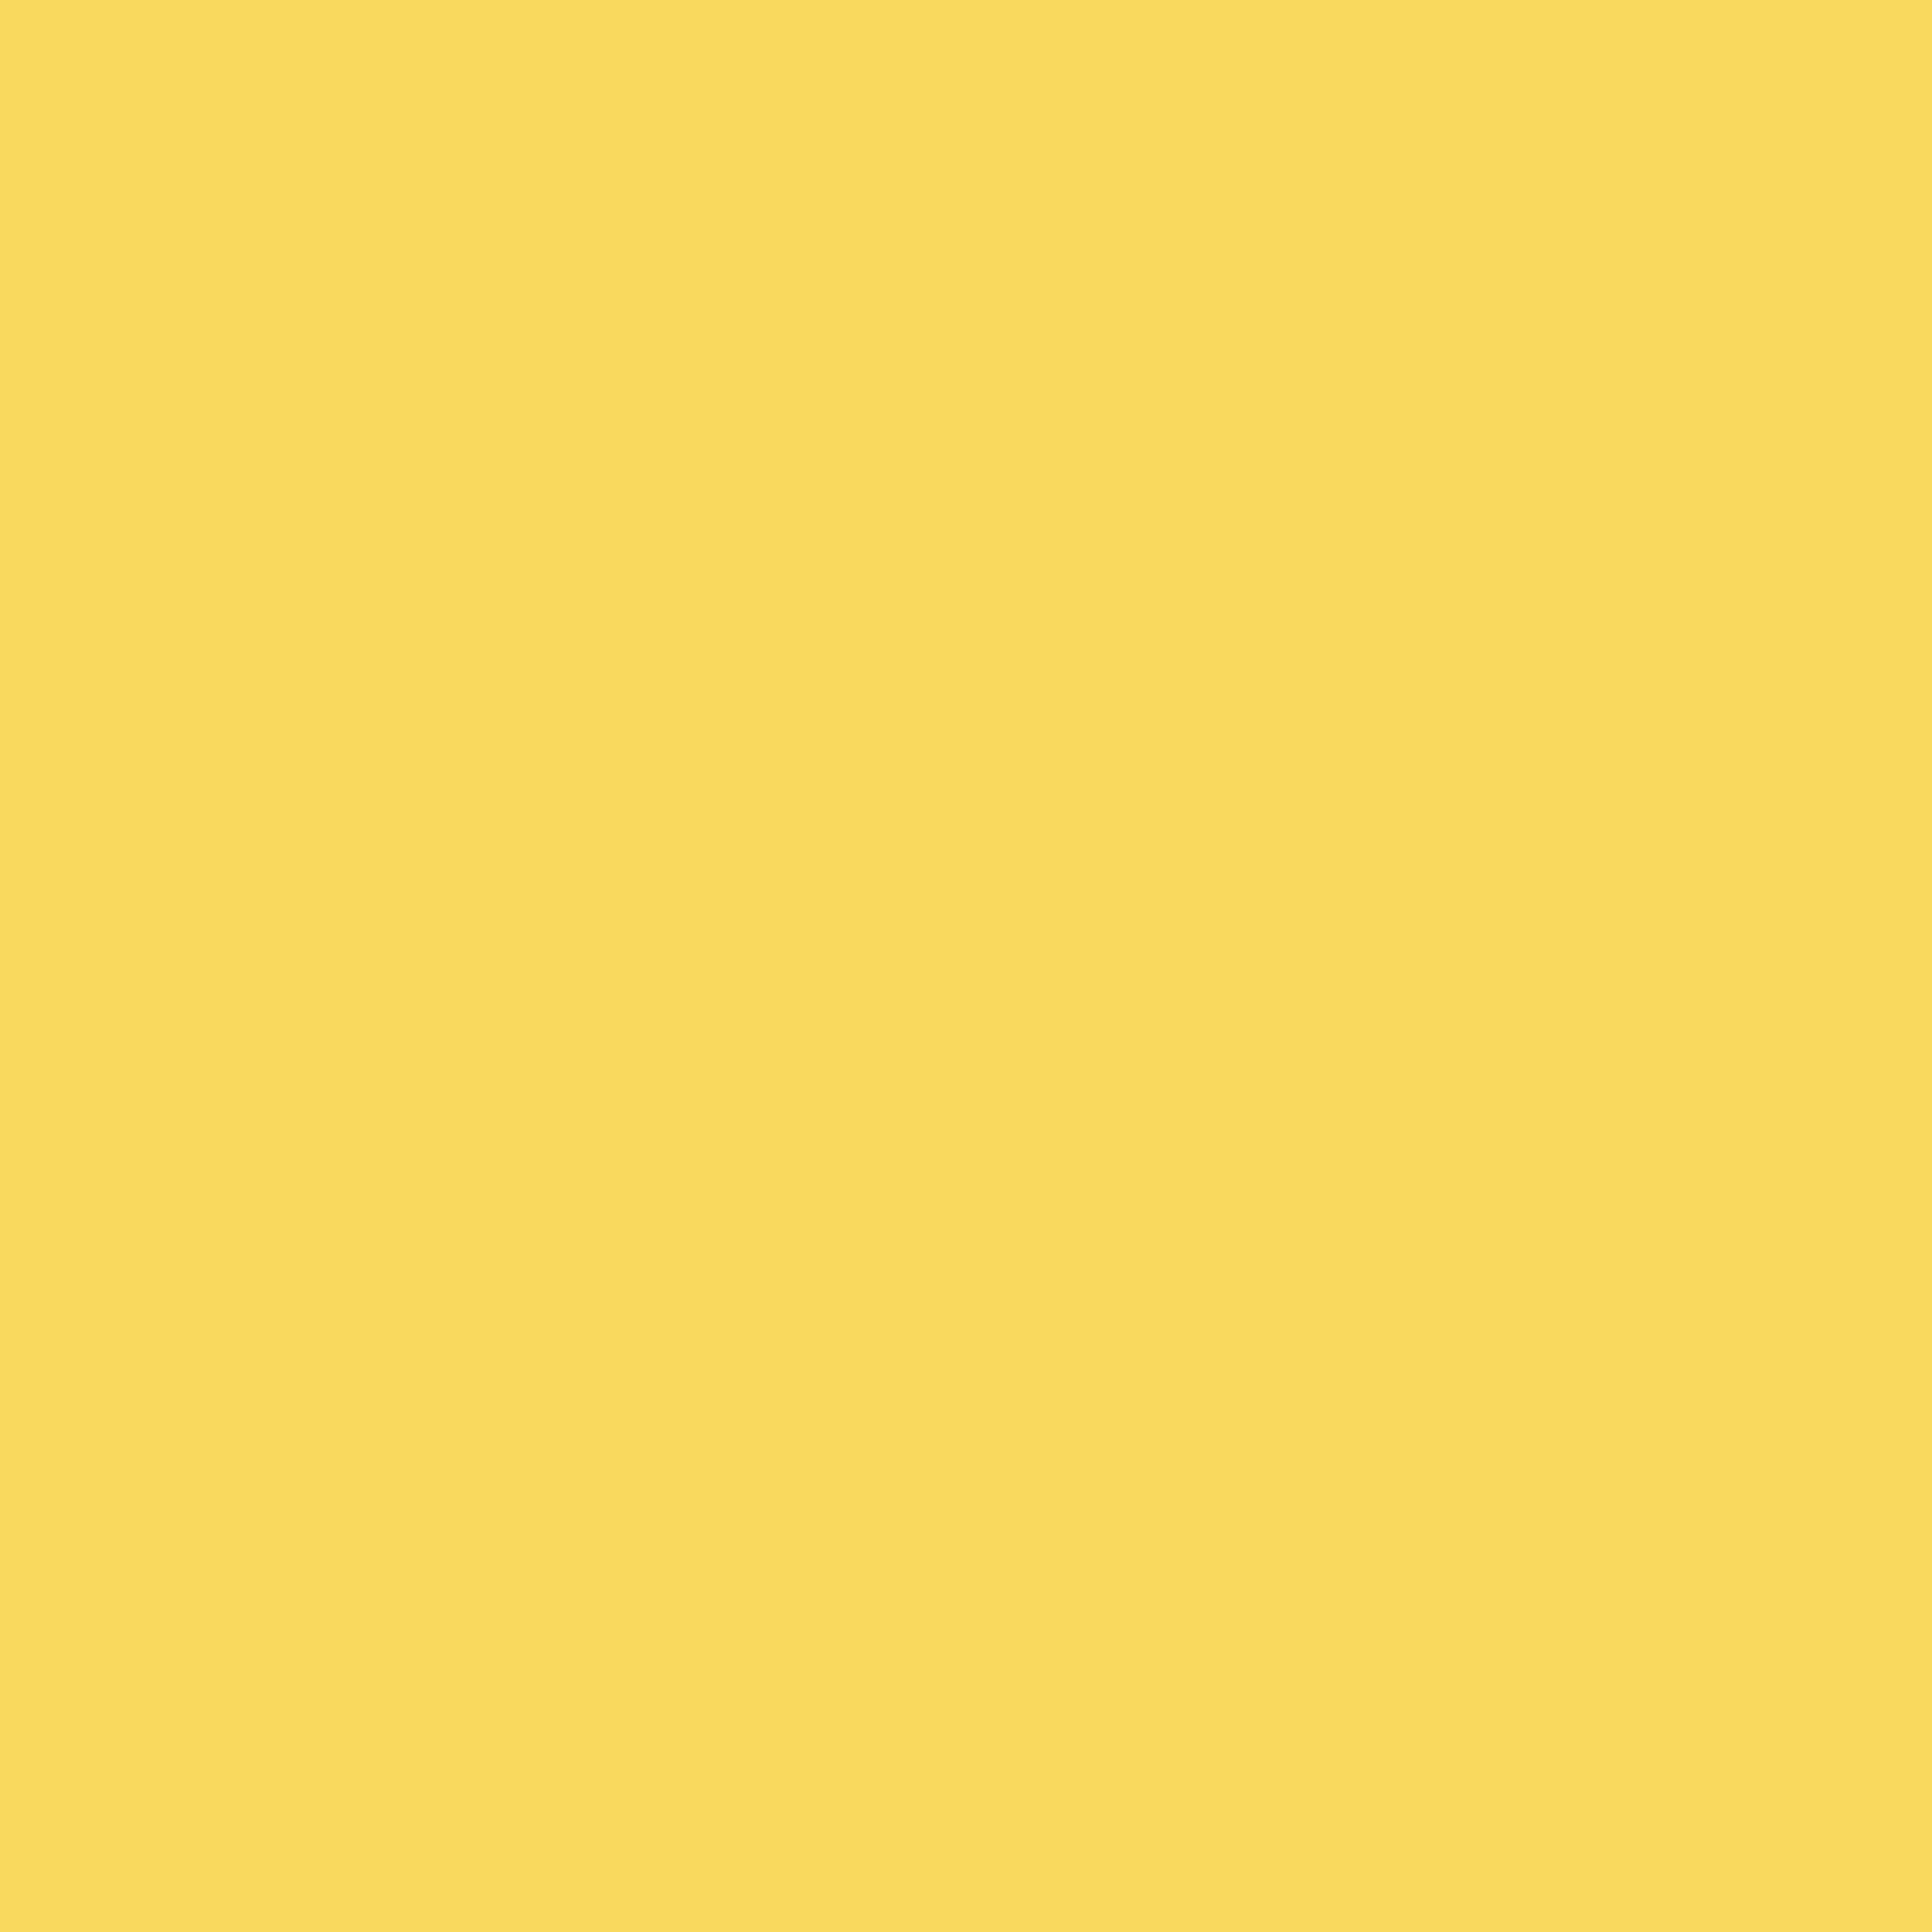 3600x3600 Stil De Grain Yellow Solid Color Background